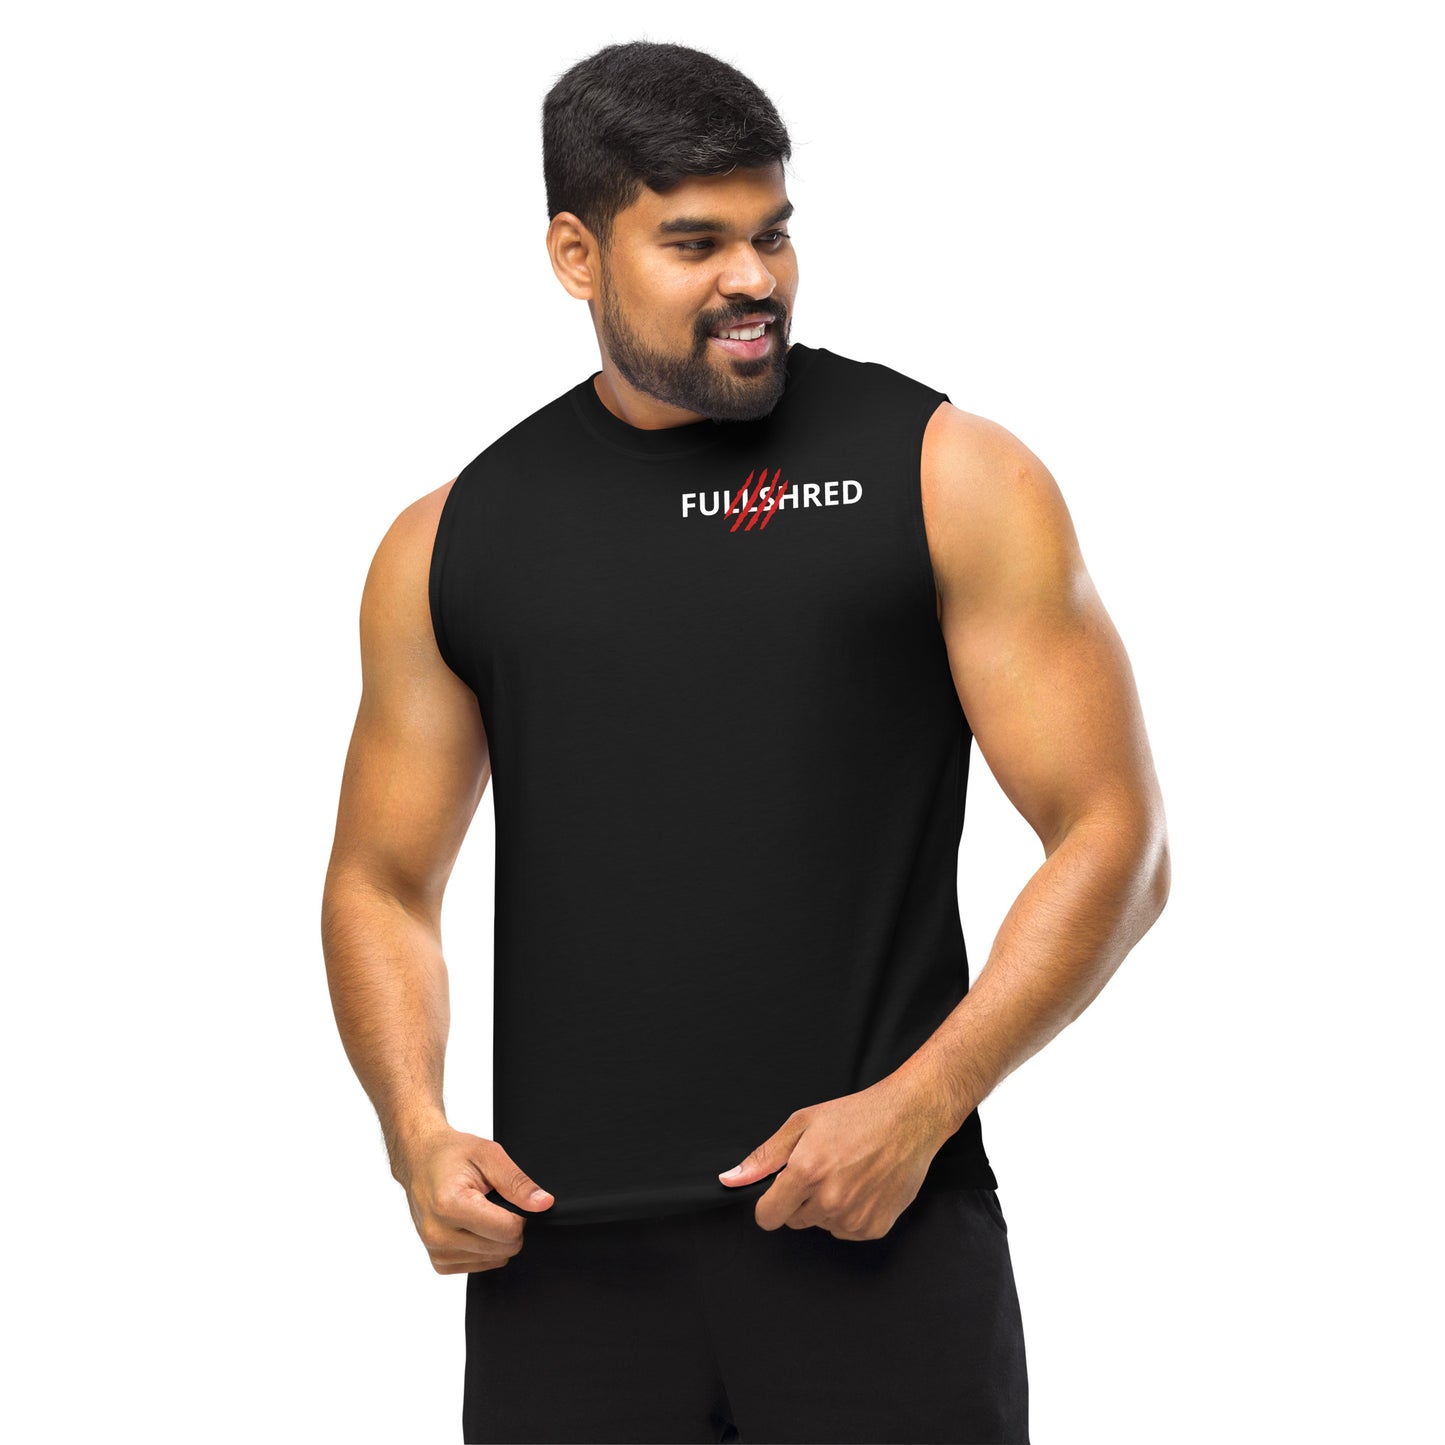 FULLSHRED Muscle Gym Shirt